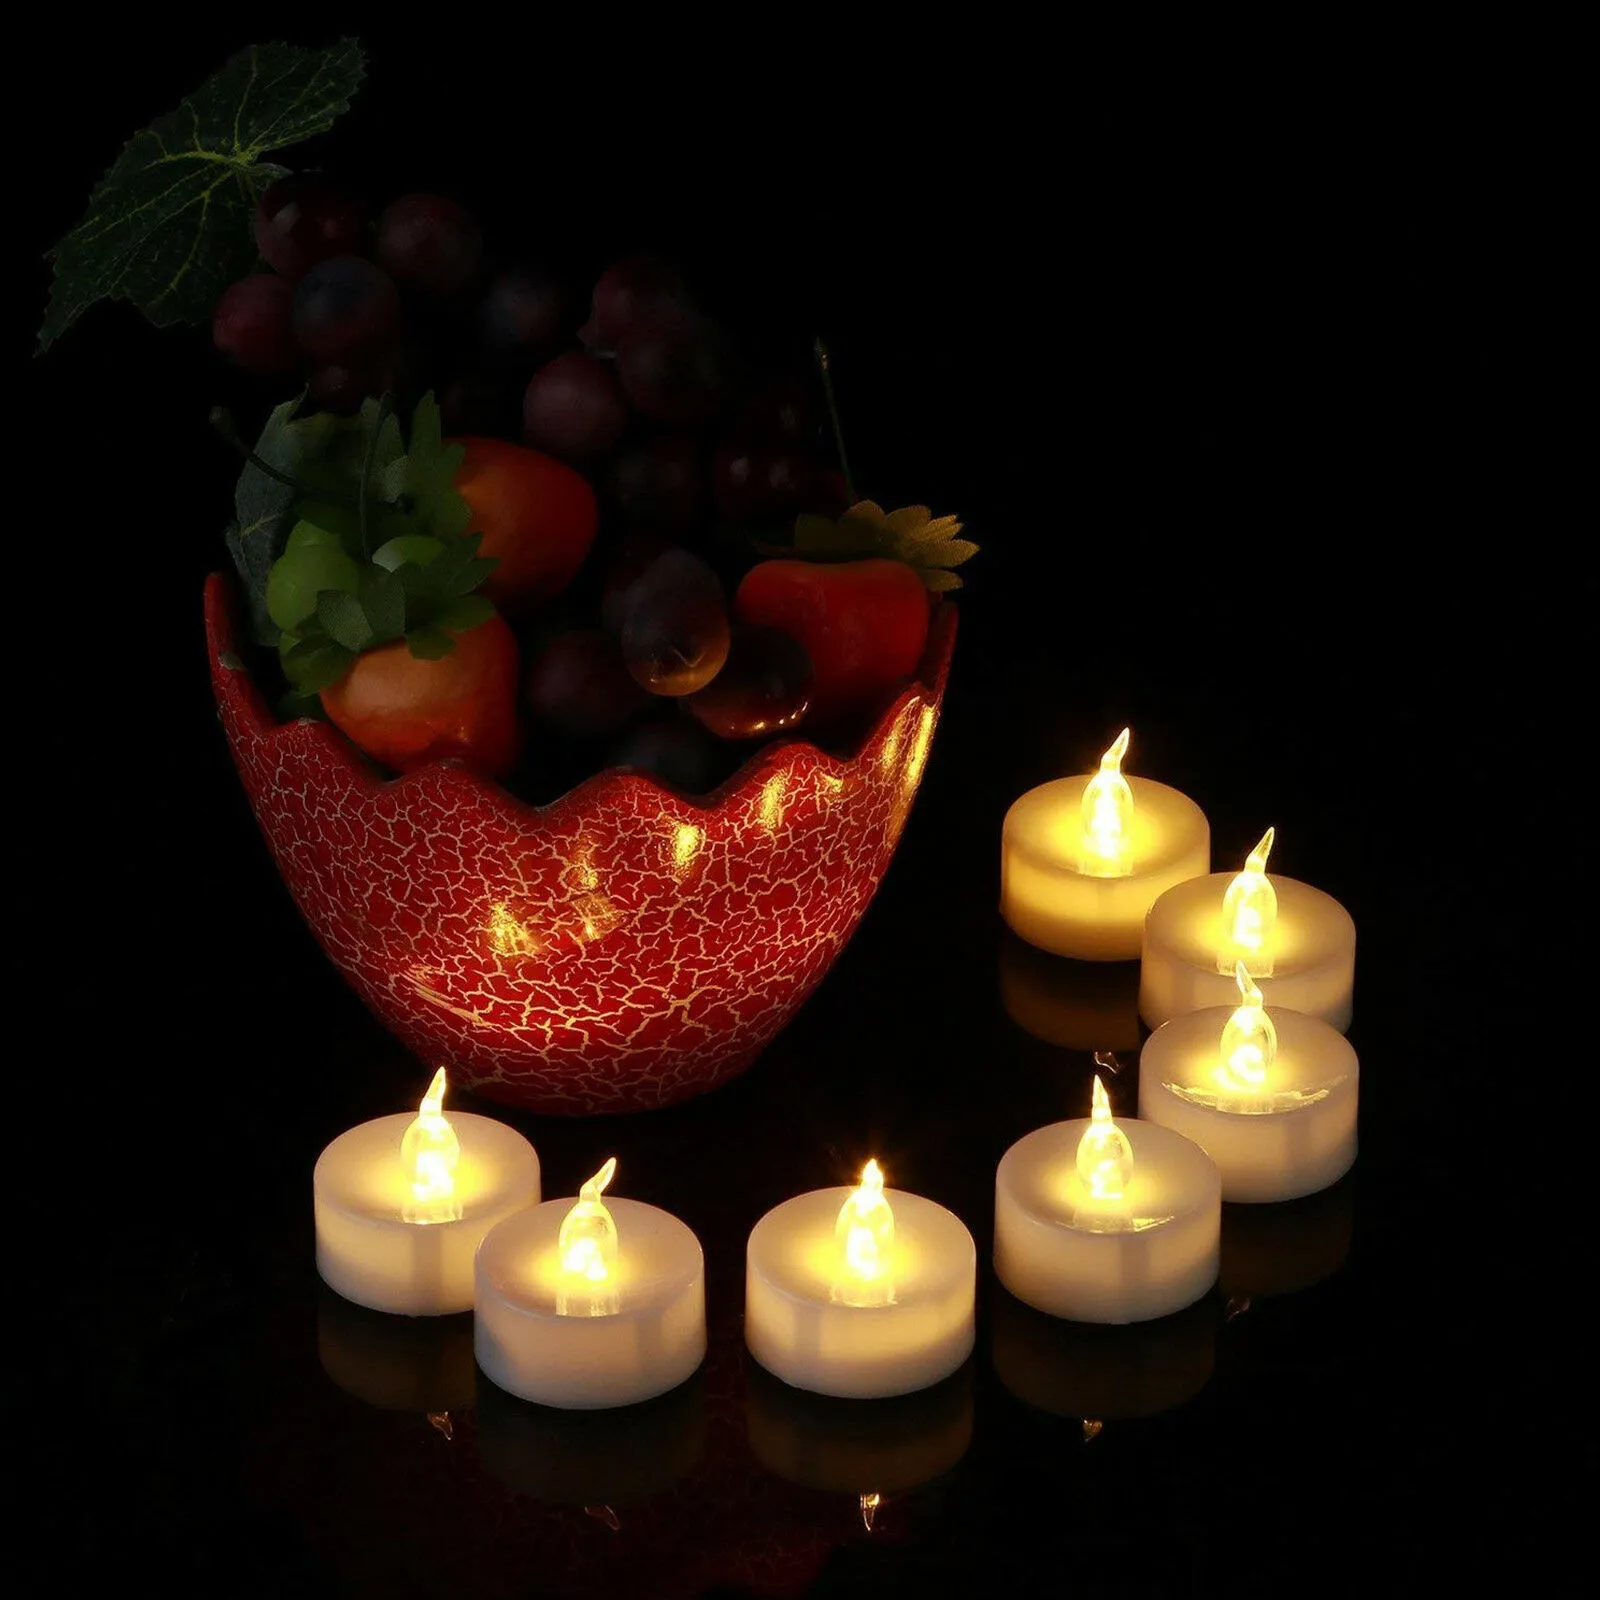 LED 차 조명 배터리 작동 화염이없는 봉헌 담가 촛불 깜박이는 전구 조명 작은 전기 가짜 티 양초 웨딩 테이블 선물 로맨틱 한 현실적